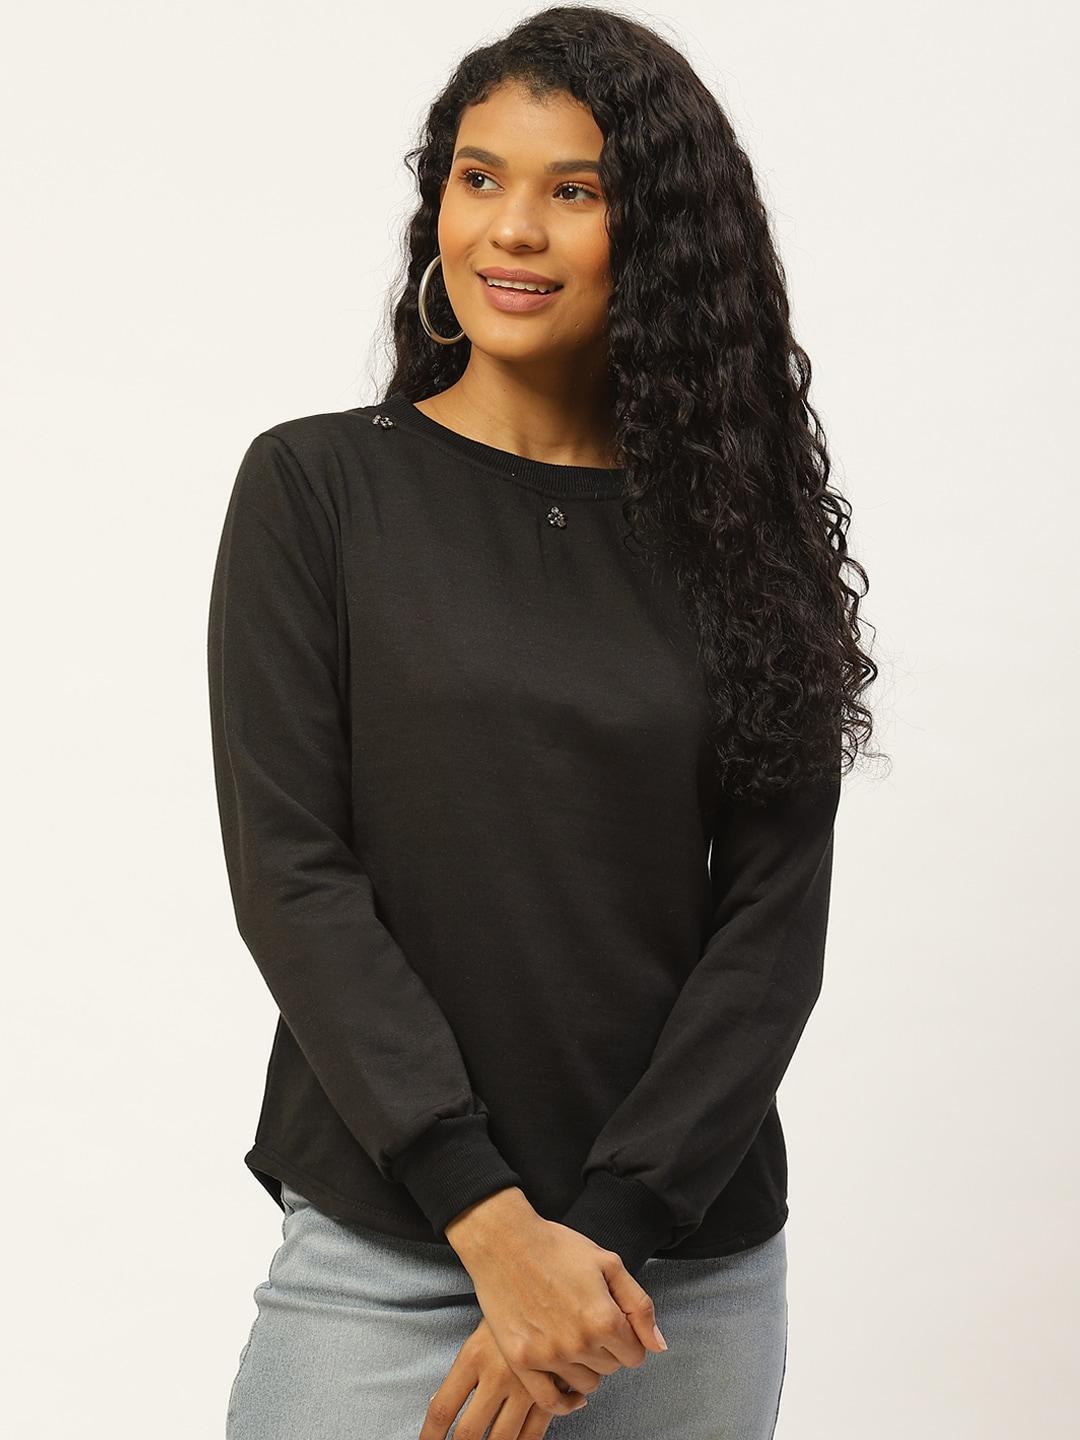 belle-fille-women-black-solid-sweatshirt